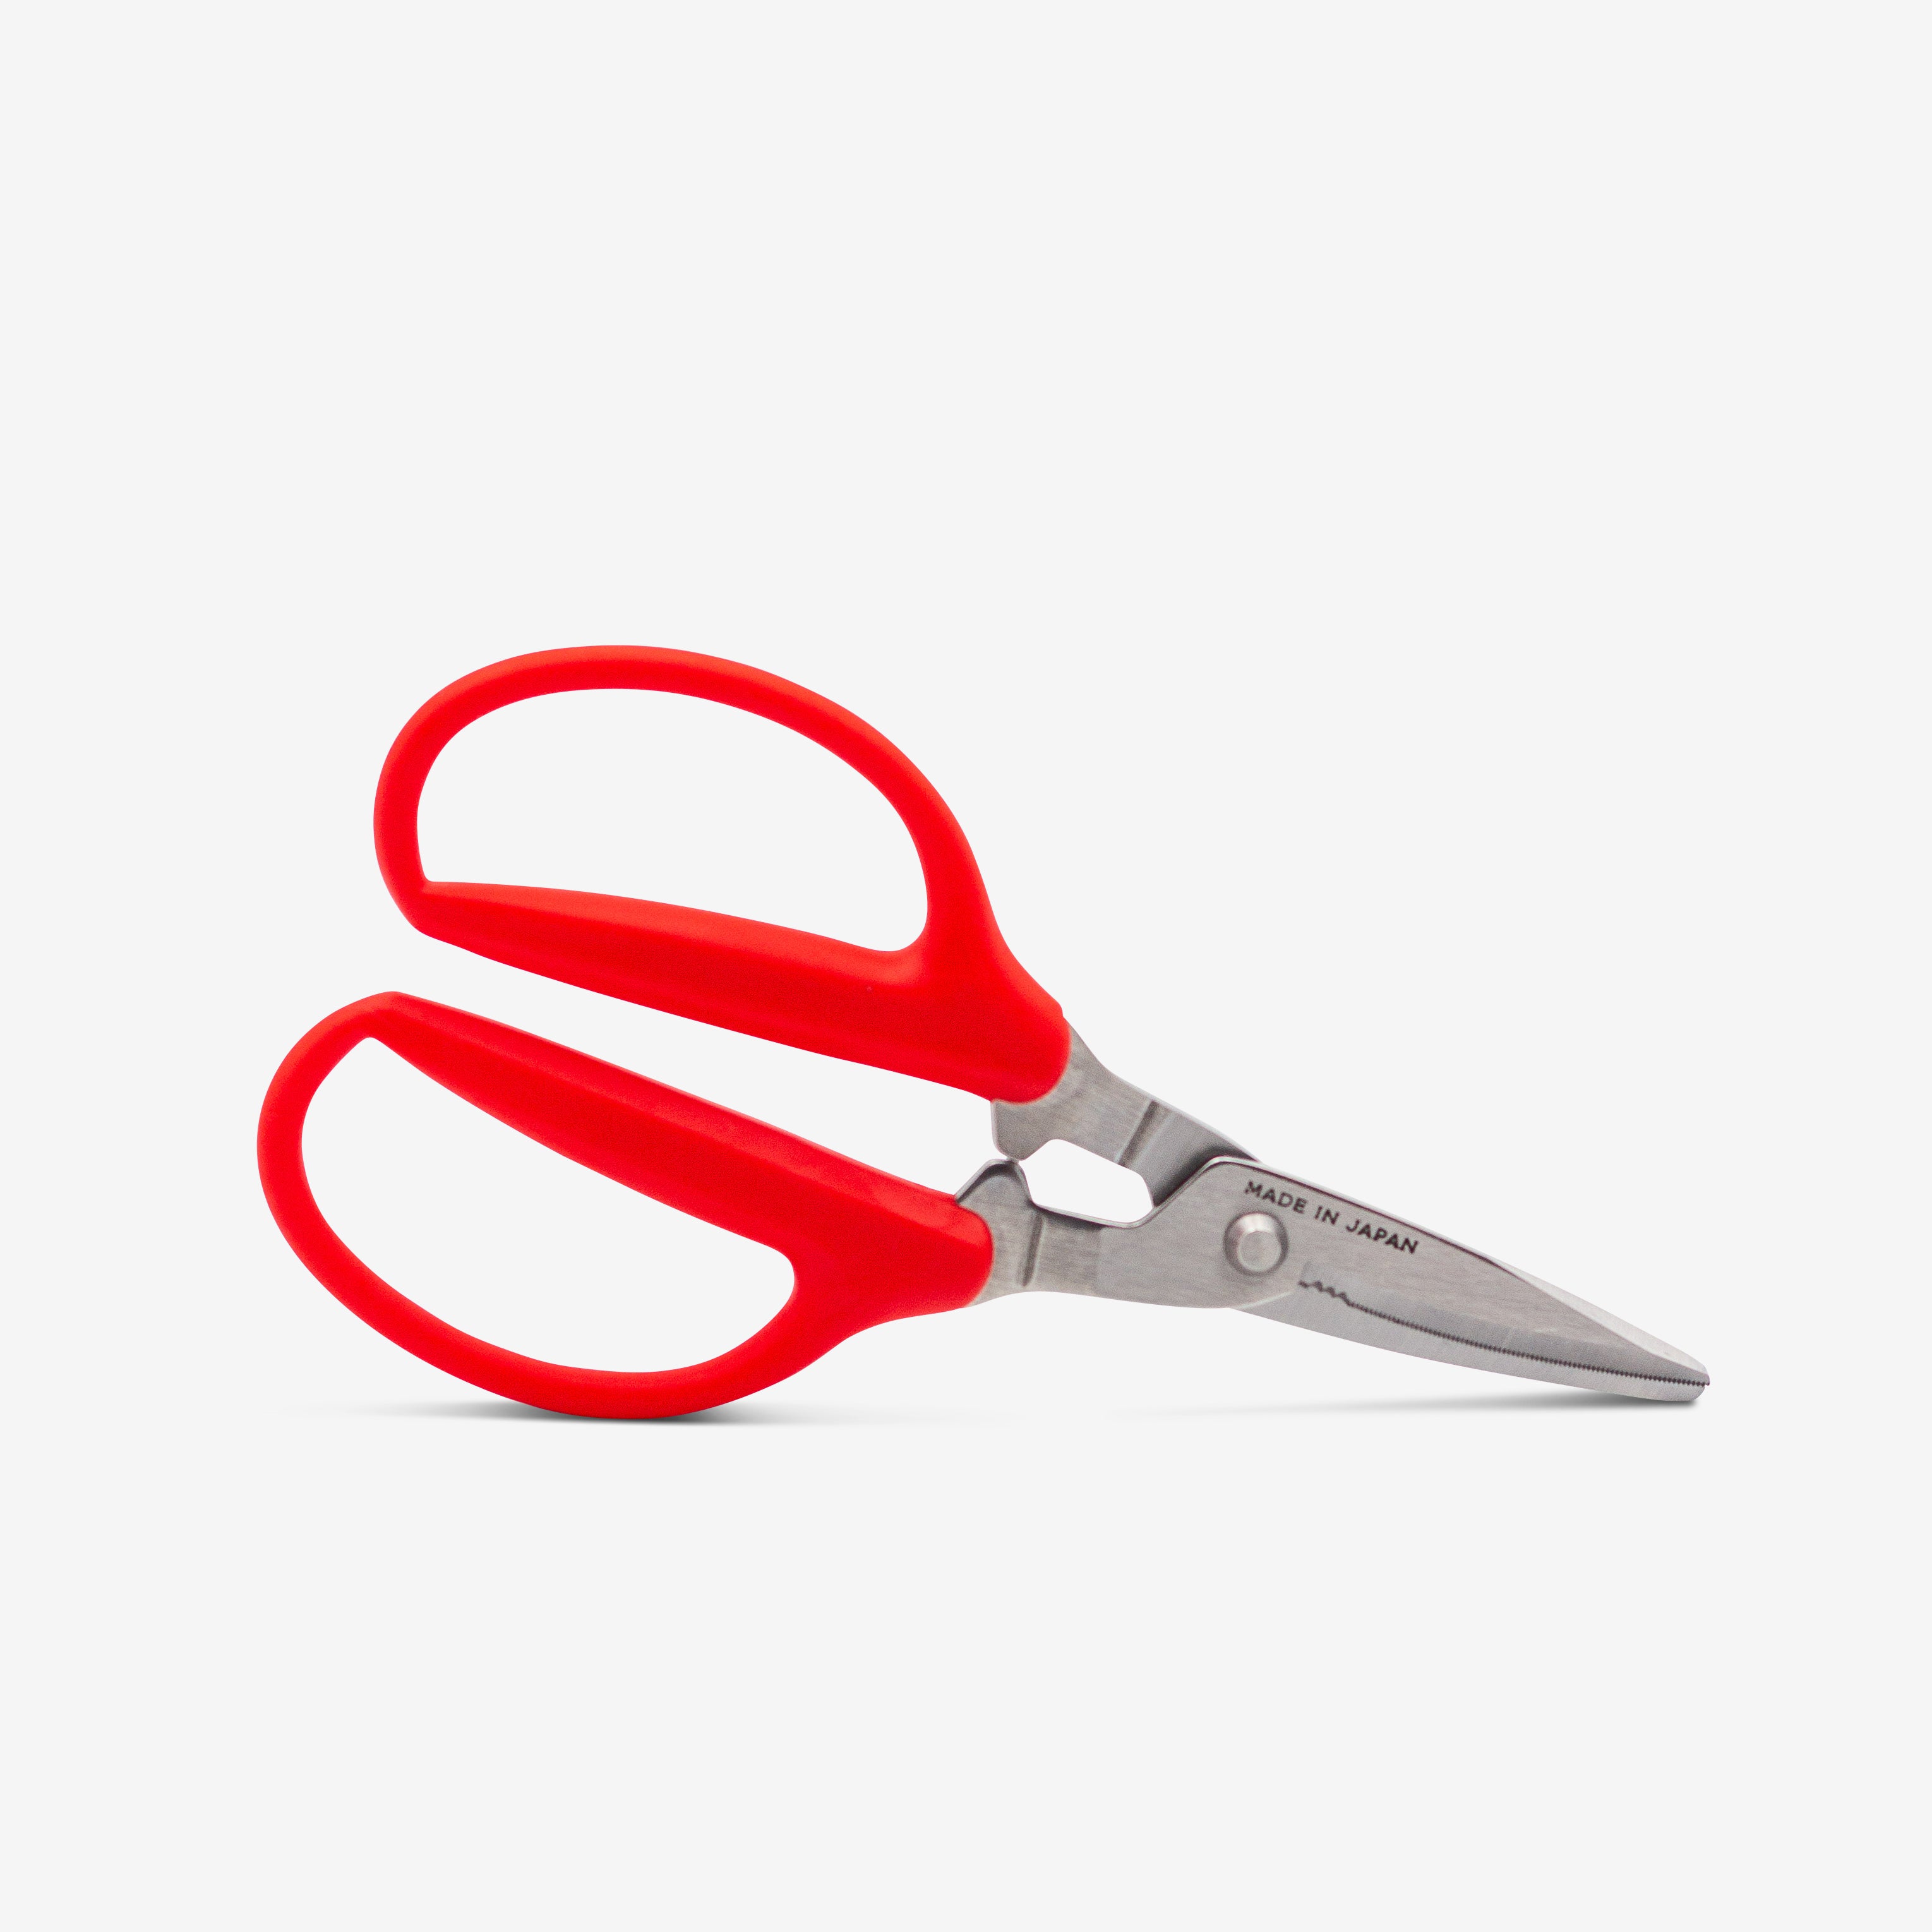 Houseplant scissors